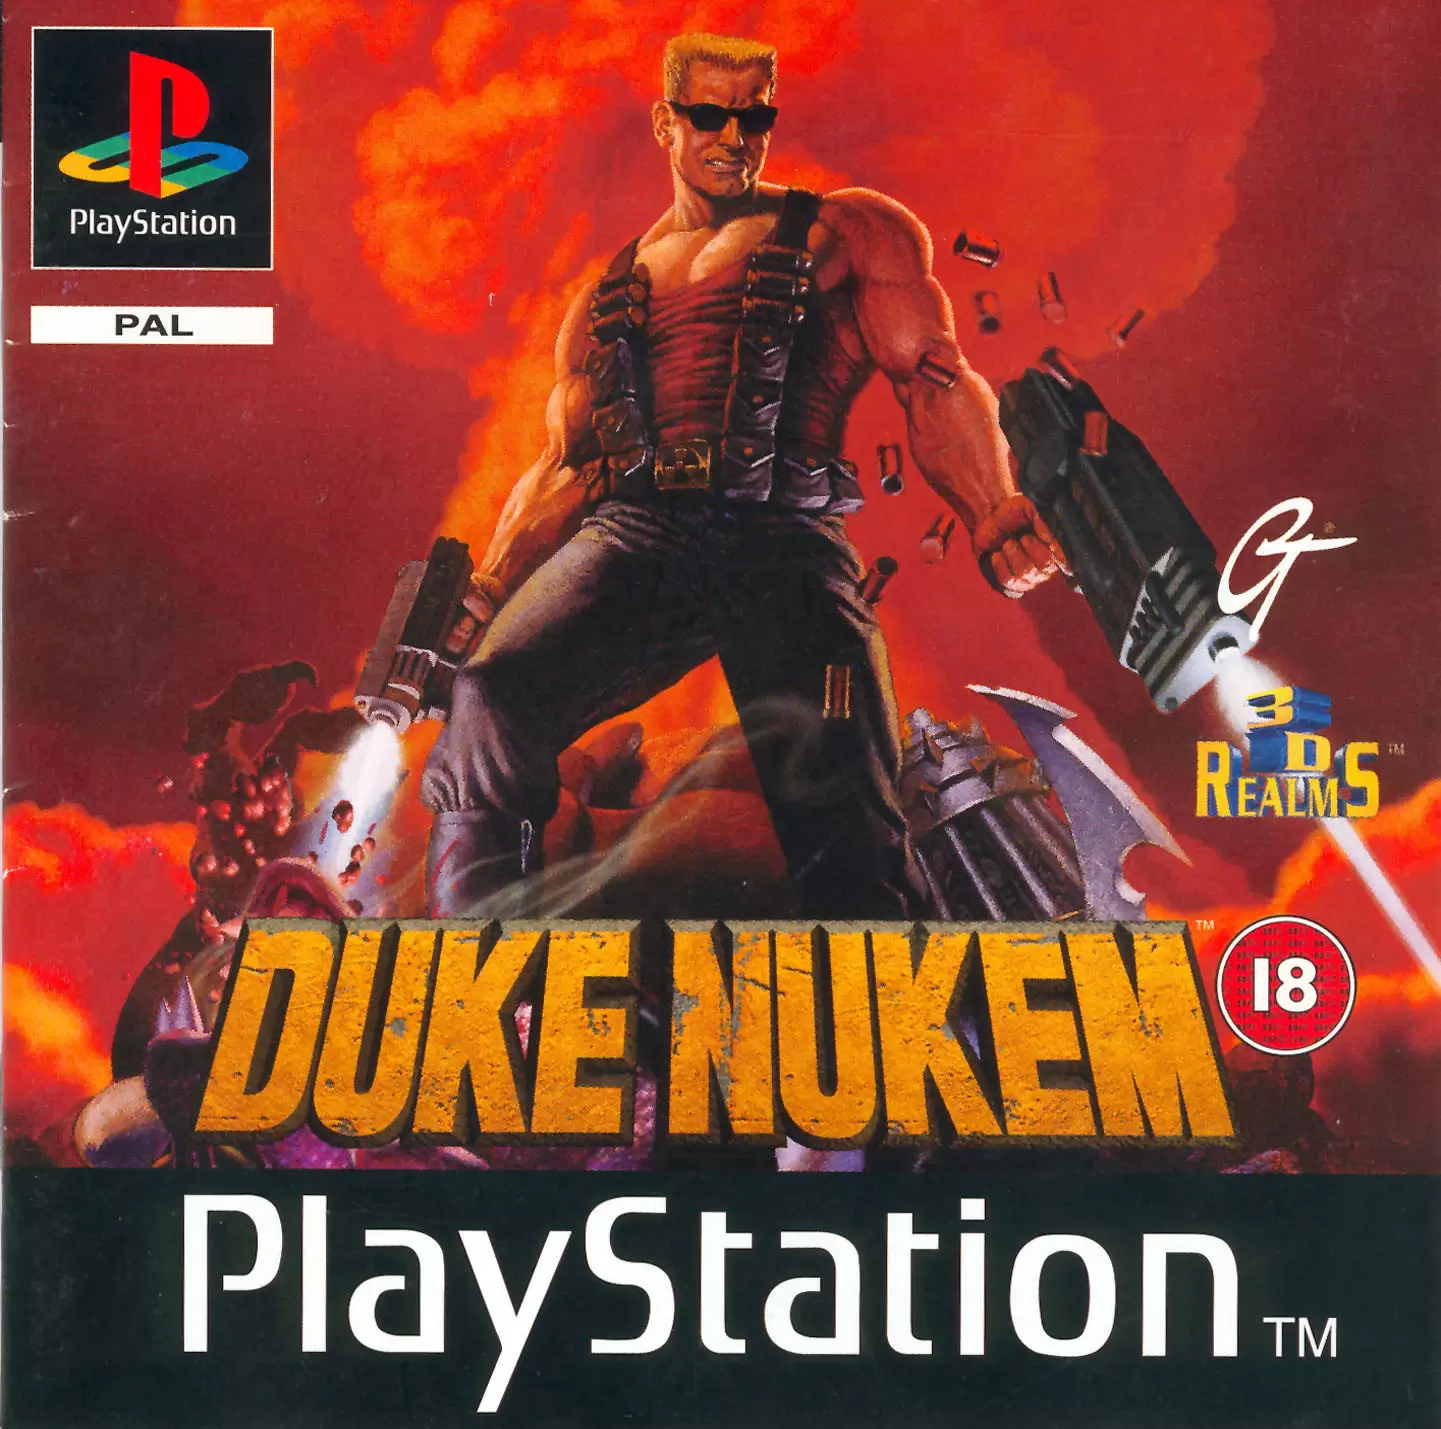 Playstation games - Duke Nukem 3D